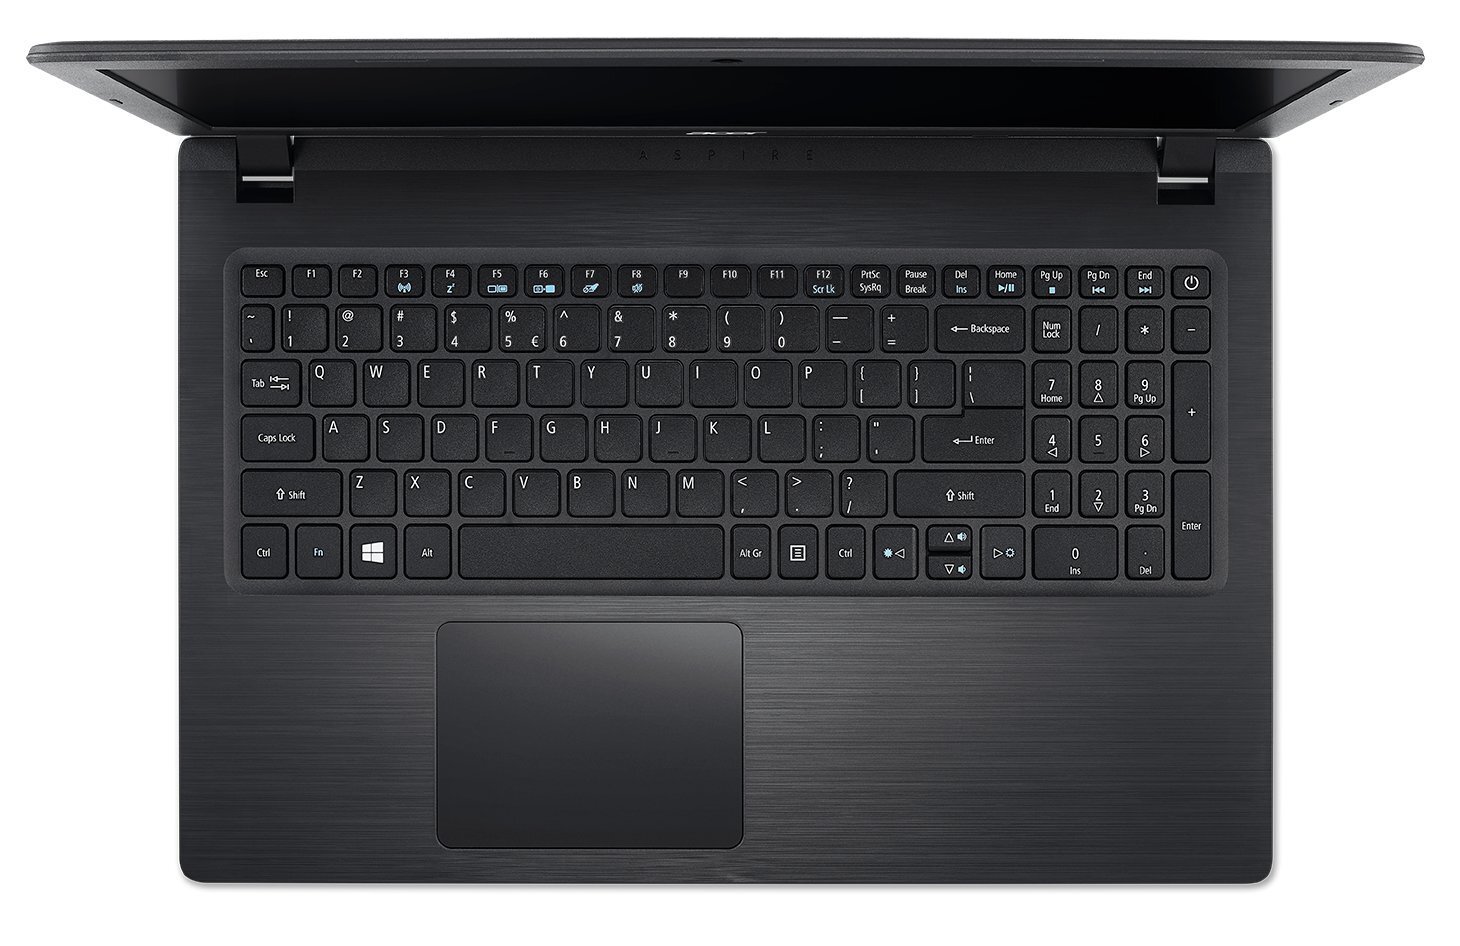 Acer Aspire 3 A315-21 15.6-inch Laptop (A9-9420e / 4GB / 1TB HDD / Windows 10 Home 64 Bit / AMD Radeon R5 Graphics), Obsidian Black-M000000000313 www.mysocially.com